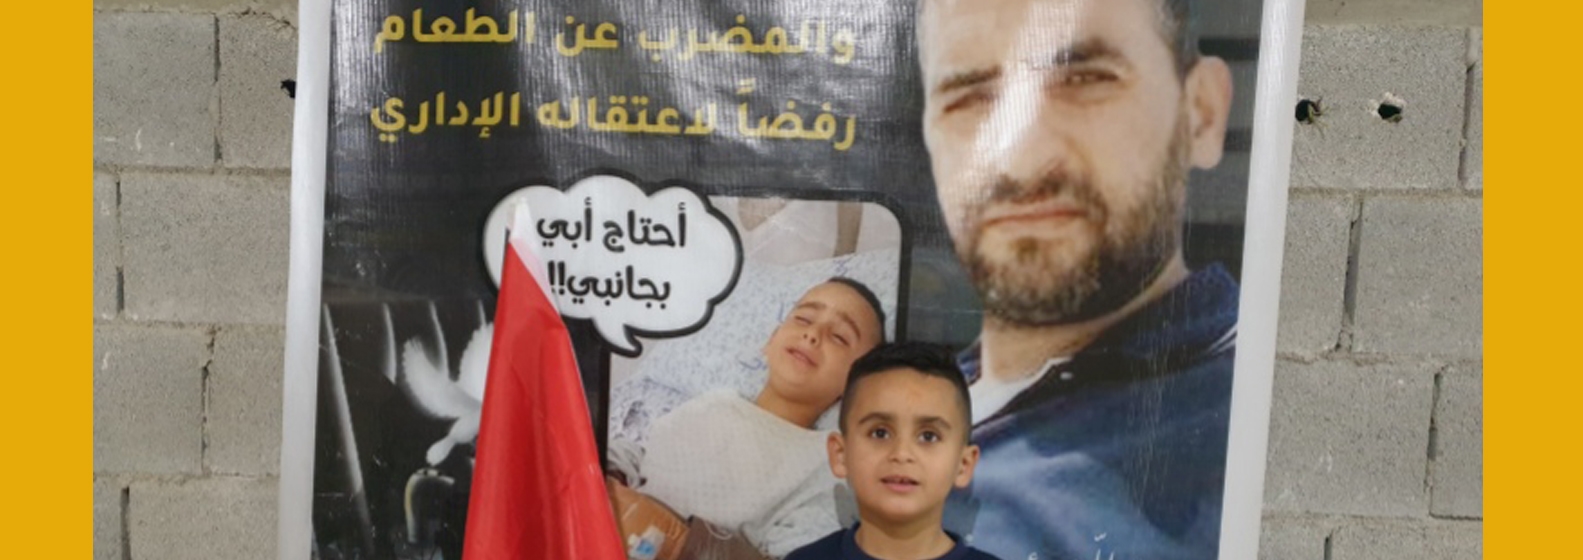 (شاهد) تطلق نداء عاجل للتحرك الفوري واتخاذ إجراءات جدية من أجل انقاذ حياة الأسير هشام أبو هواش.